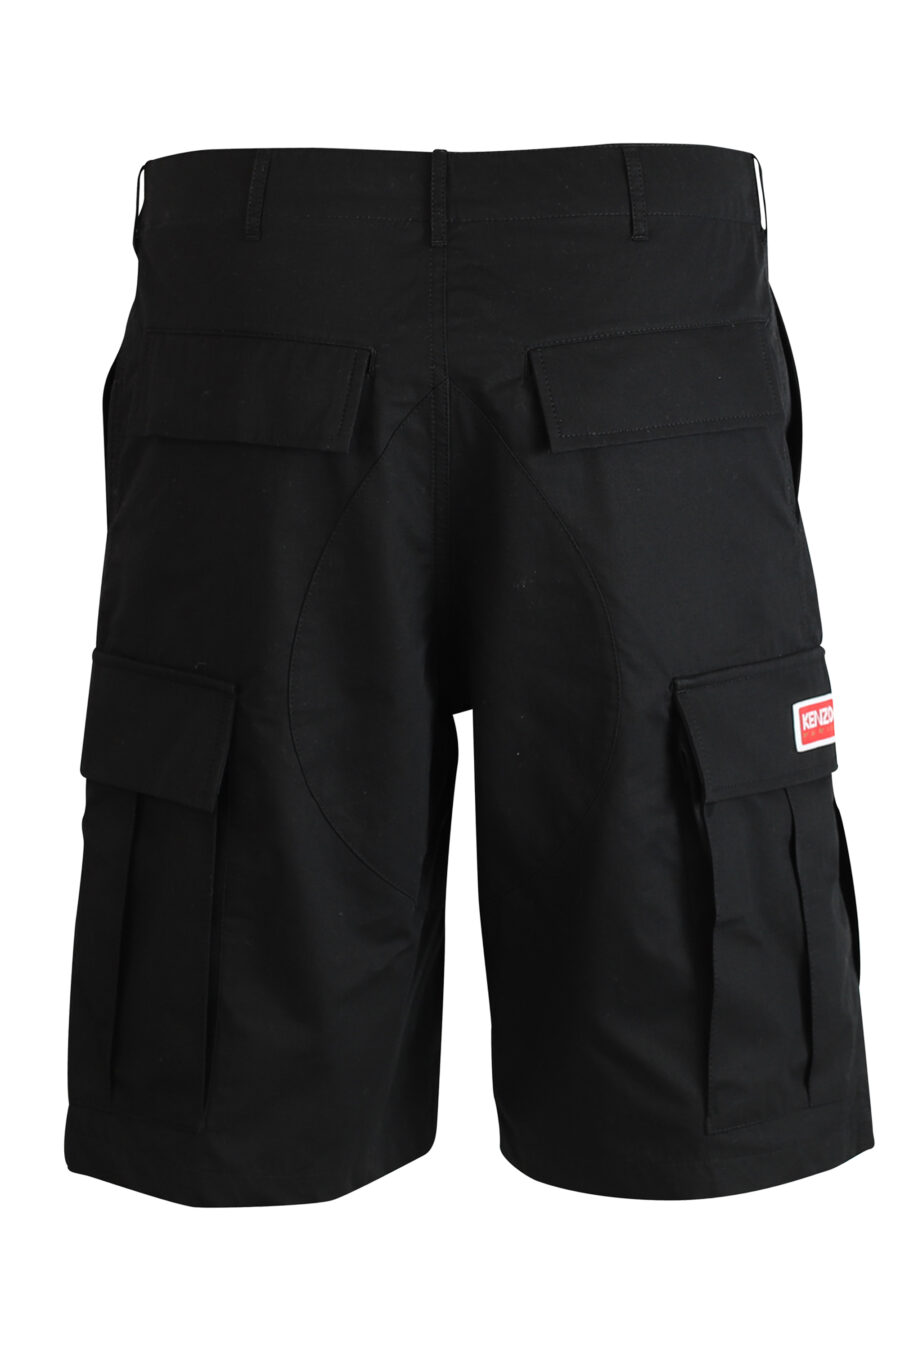 Black cargo shorts - 3612230420502 3